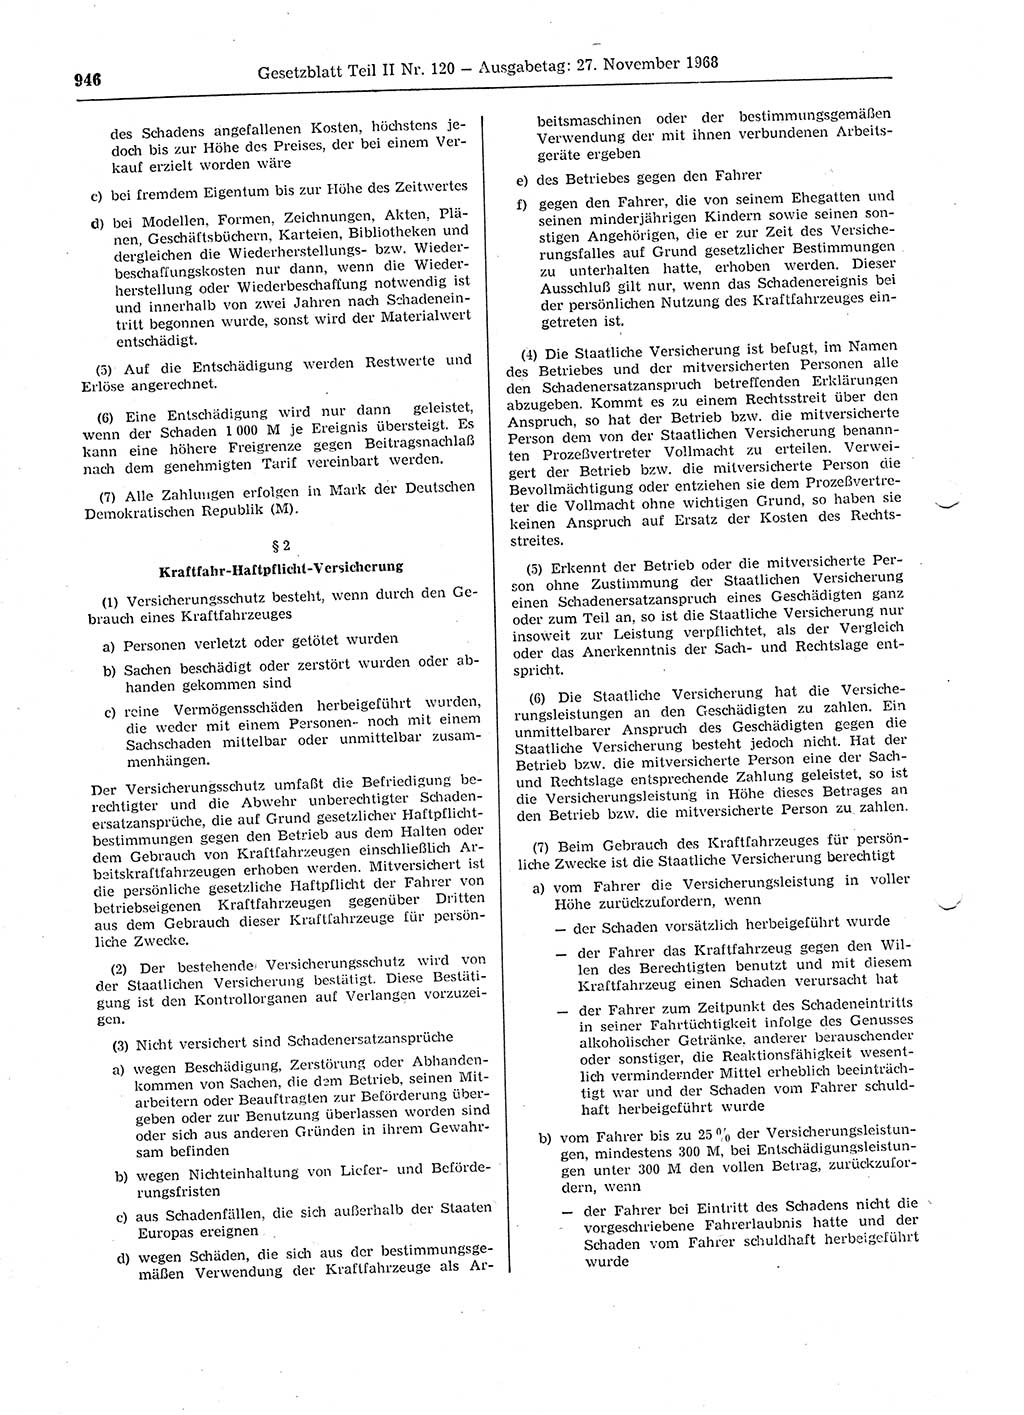 Gesetzblatt (GBl.) der Deutschen Demokratischen Republik (DDR) Teil ⅠⅠ 1968, Seite 946 (GBl. DDR ⅠⅠ 1968, S. 946)